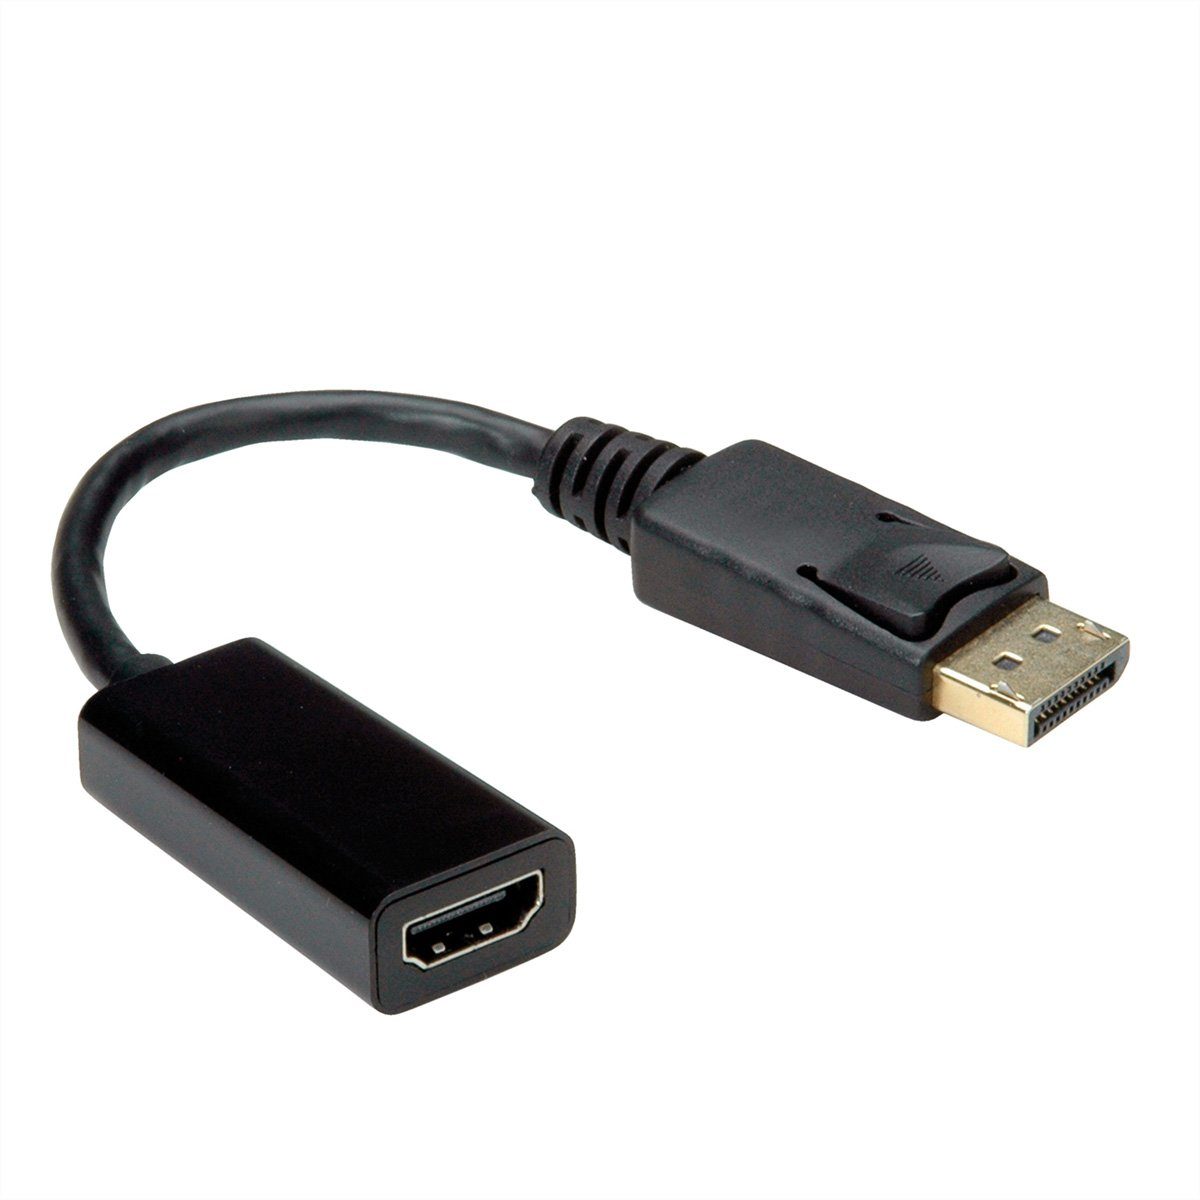 VALUE »DisplayPort-HDMI Adapter, DP ST - HDMI BU« Audio- & Video-Adapter  DisplayPort Männlich (Stecker) zu HDMI Typ A Weiblich (Buchse), 15.0 cm  online kaufen | OTTO